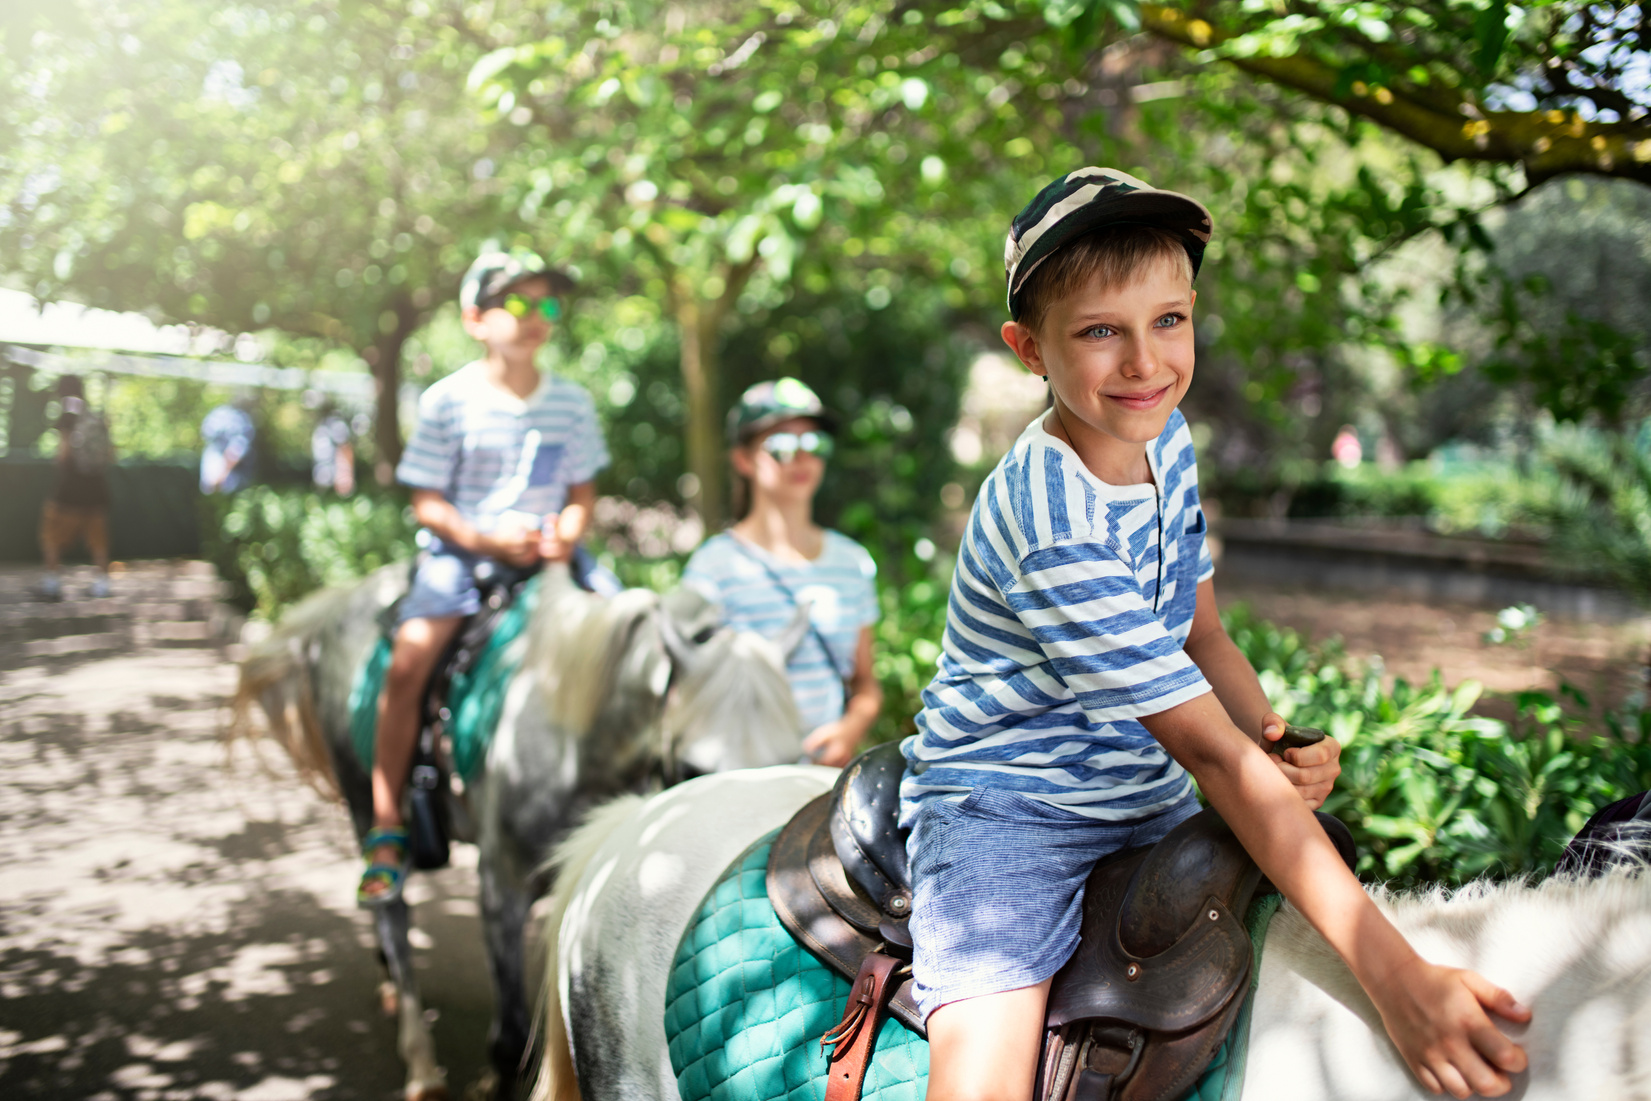 Kids enjoying riding ponies.